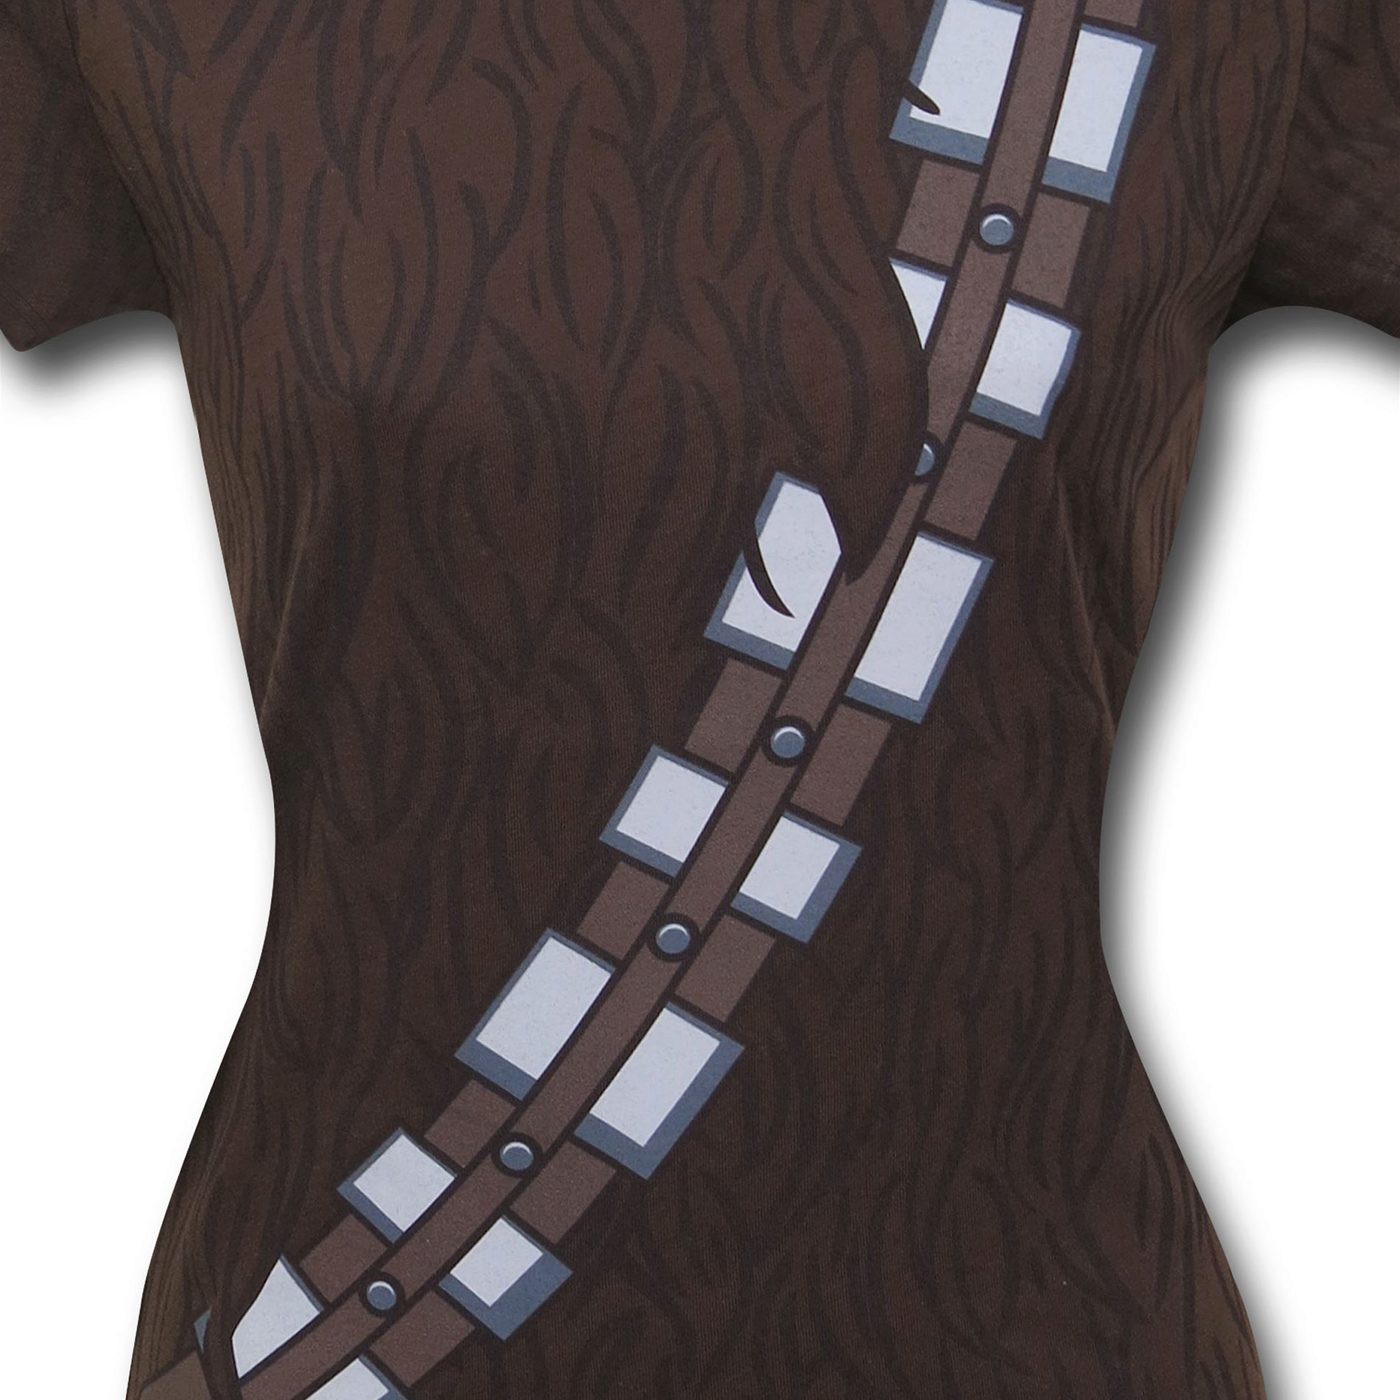 Star Wars Chewbacca Costume Women's T-Shirt